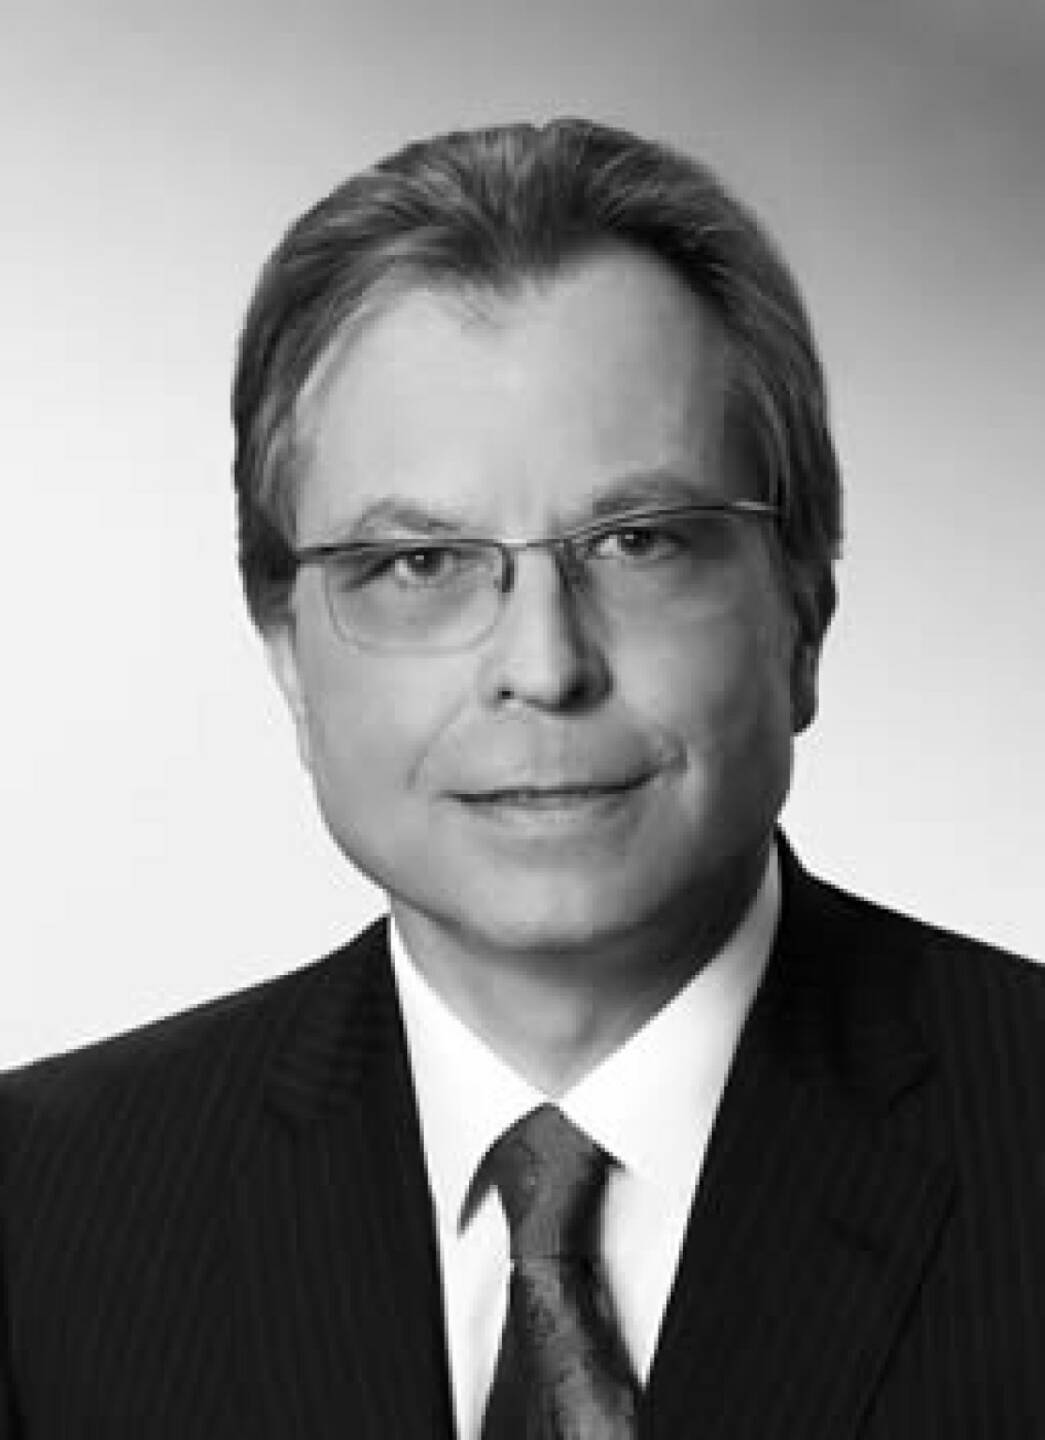 Der österreichische Private Equity-Spezialist Martin Prohazka kommt wieder an Bord von Gain Capital, einem Fund-of-Fund-Investor, den er im Jahr 2005 mitgegründet hat. Gain Capital ist heute Teil der Semper Constantia Group. Fotoquelle: www.gain-capital.at